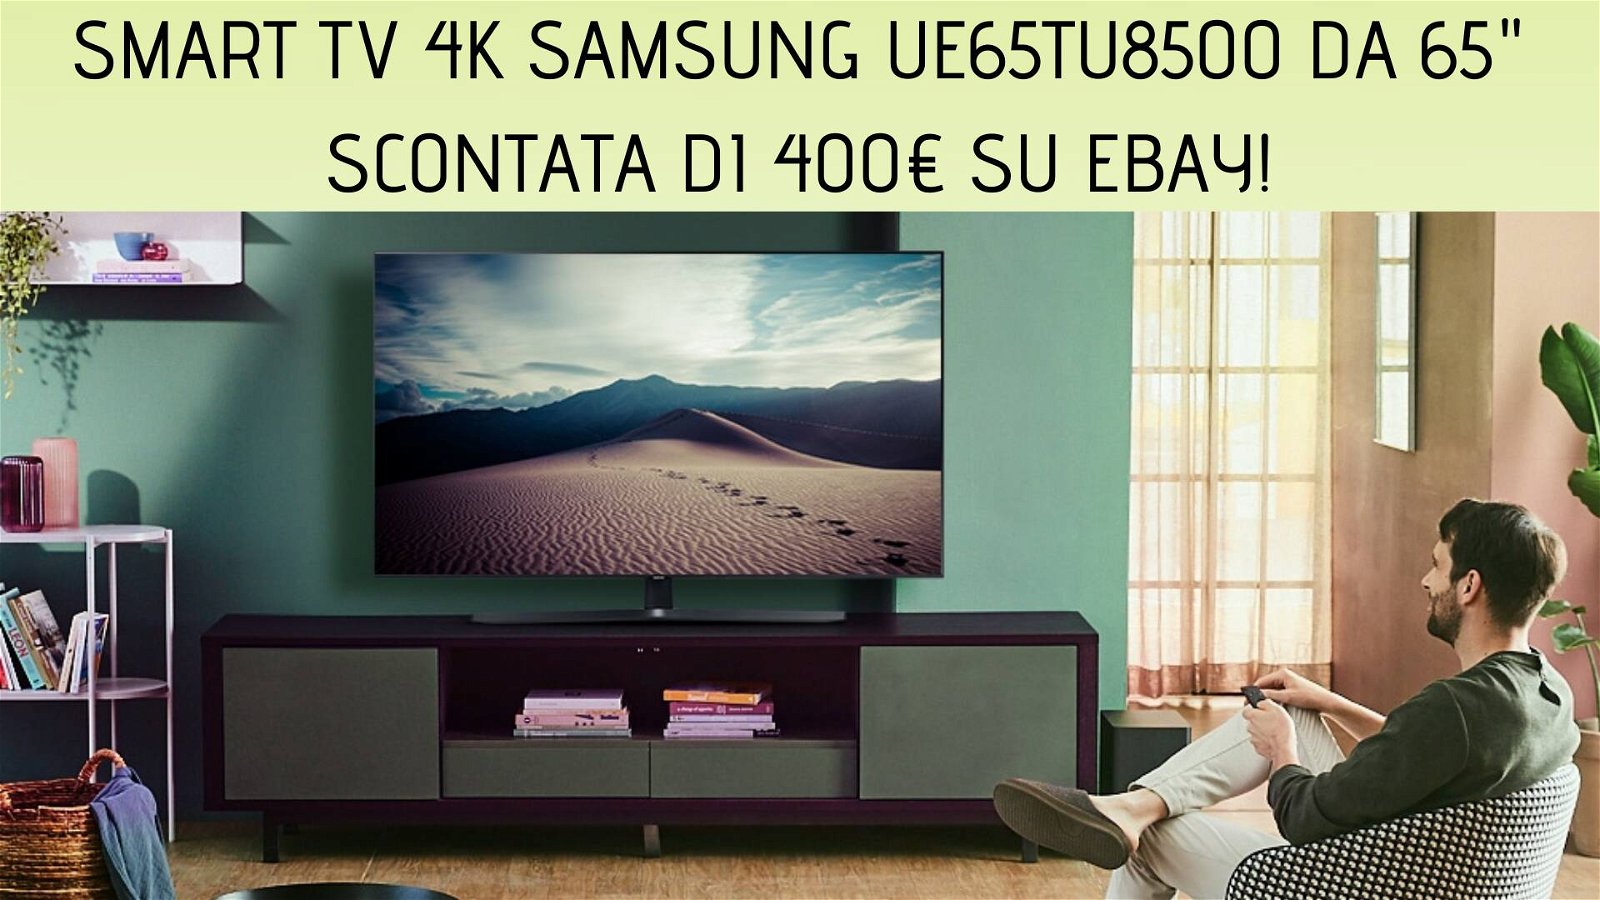 Immagine di Smart TV 4K Samsung UE65TU8500 da 65" in sconto di 400€ su eBay!